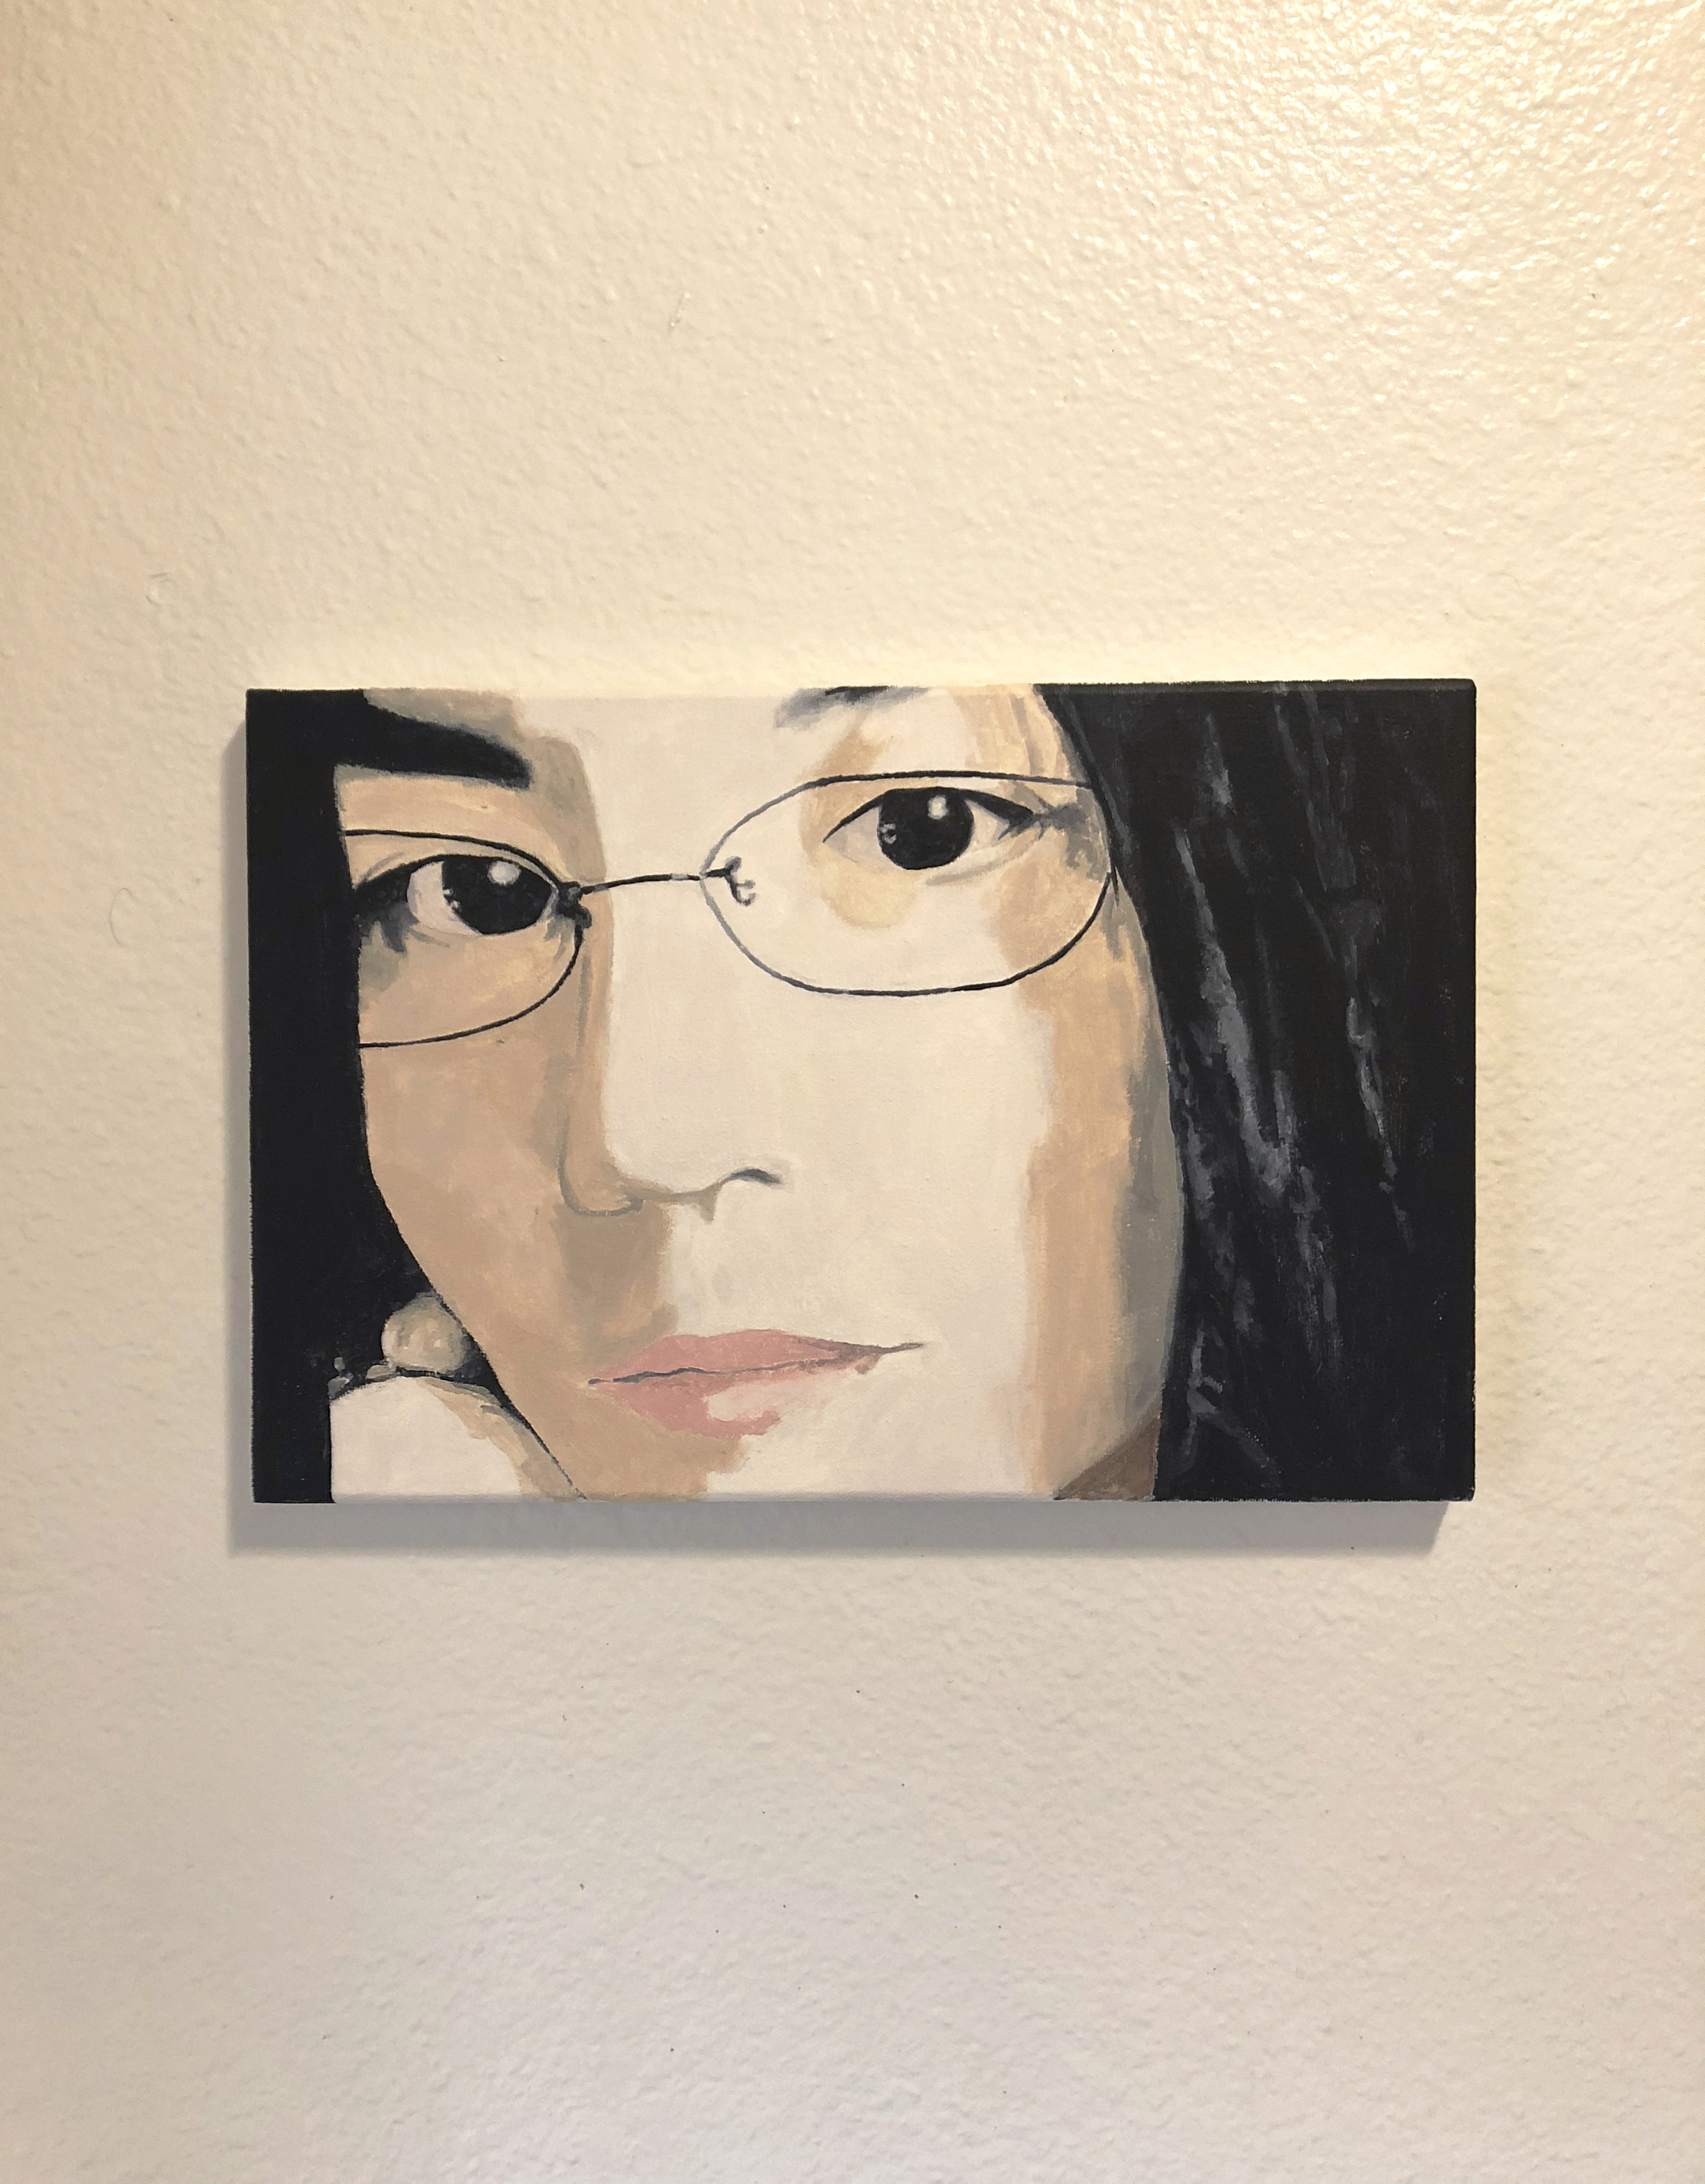 Close up acryllic painting of Maye Wong on a white wall